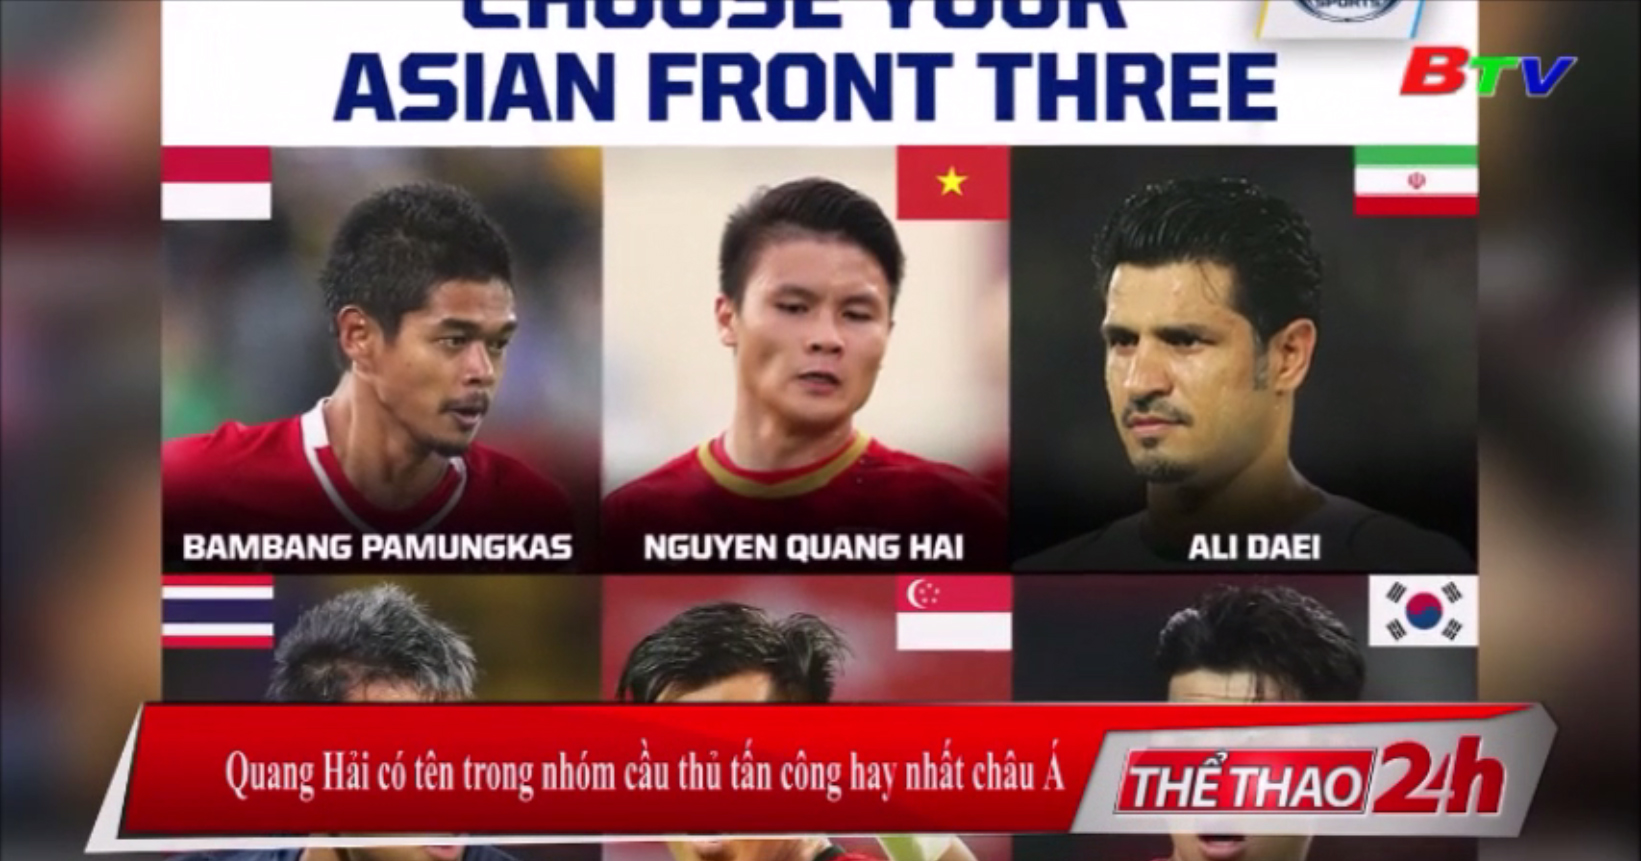 Quang Hải có tên trong nhóm cầu thủ tấn công hay nhất châu Á